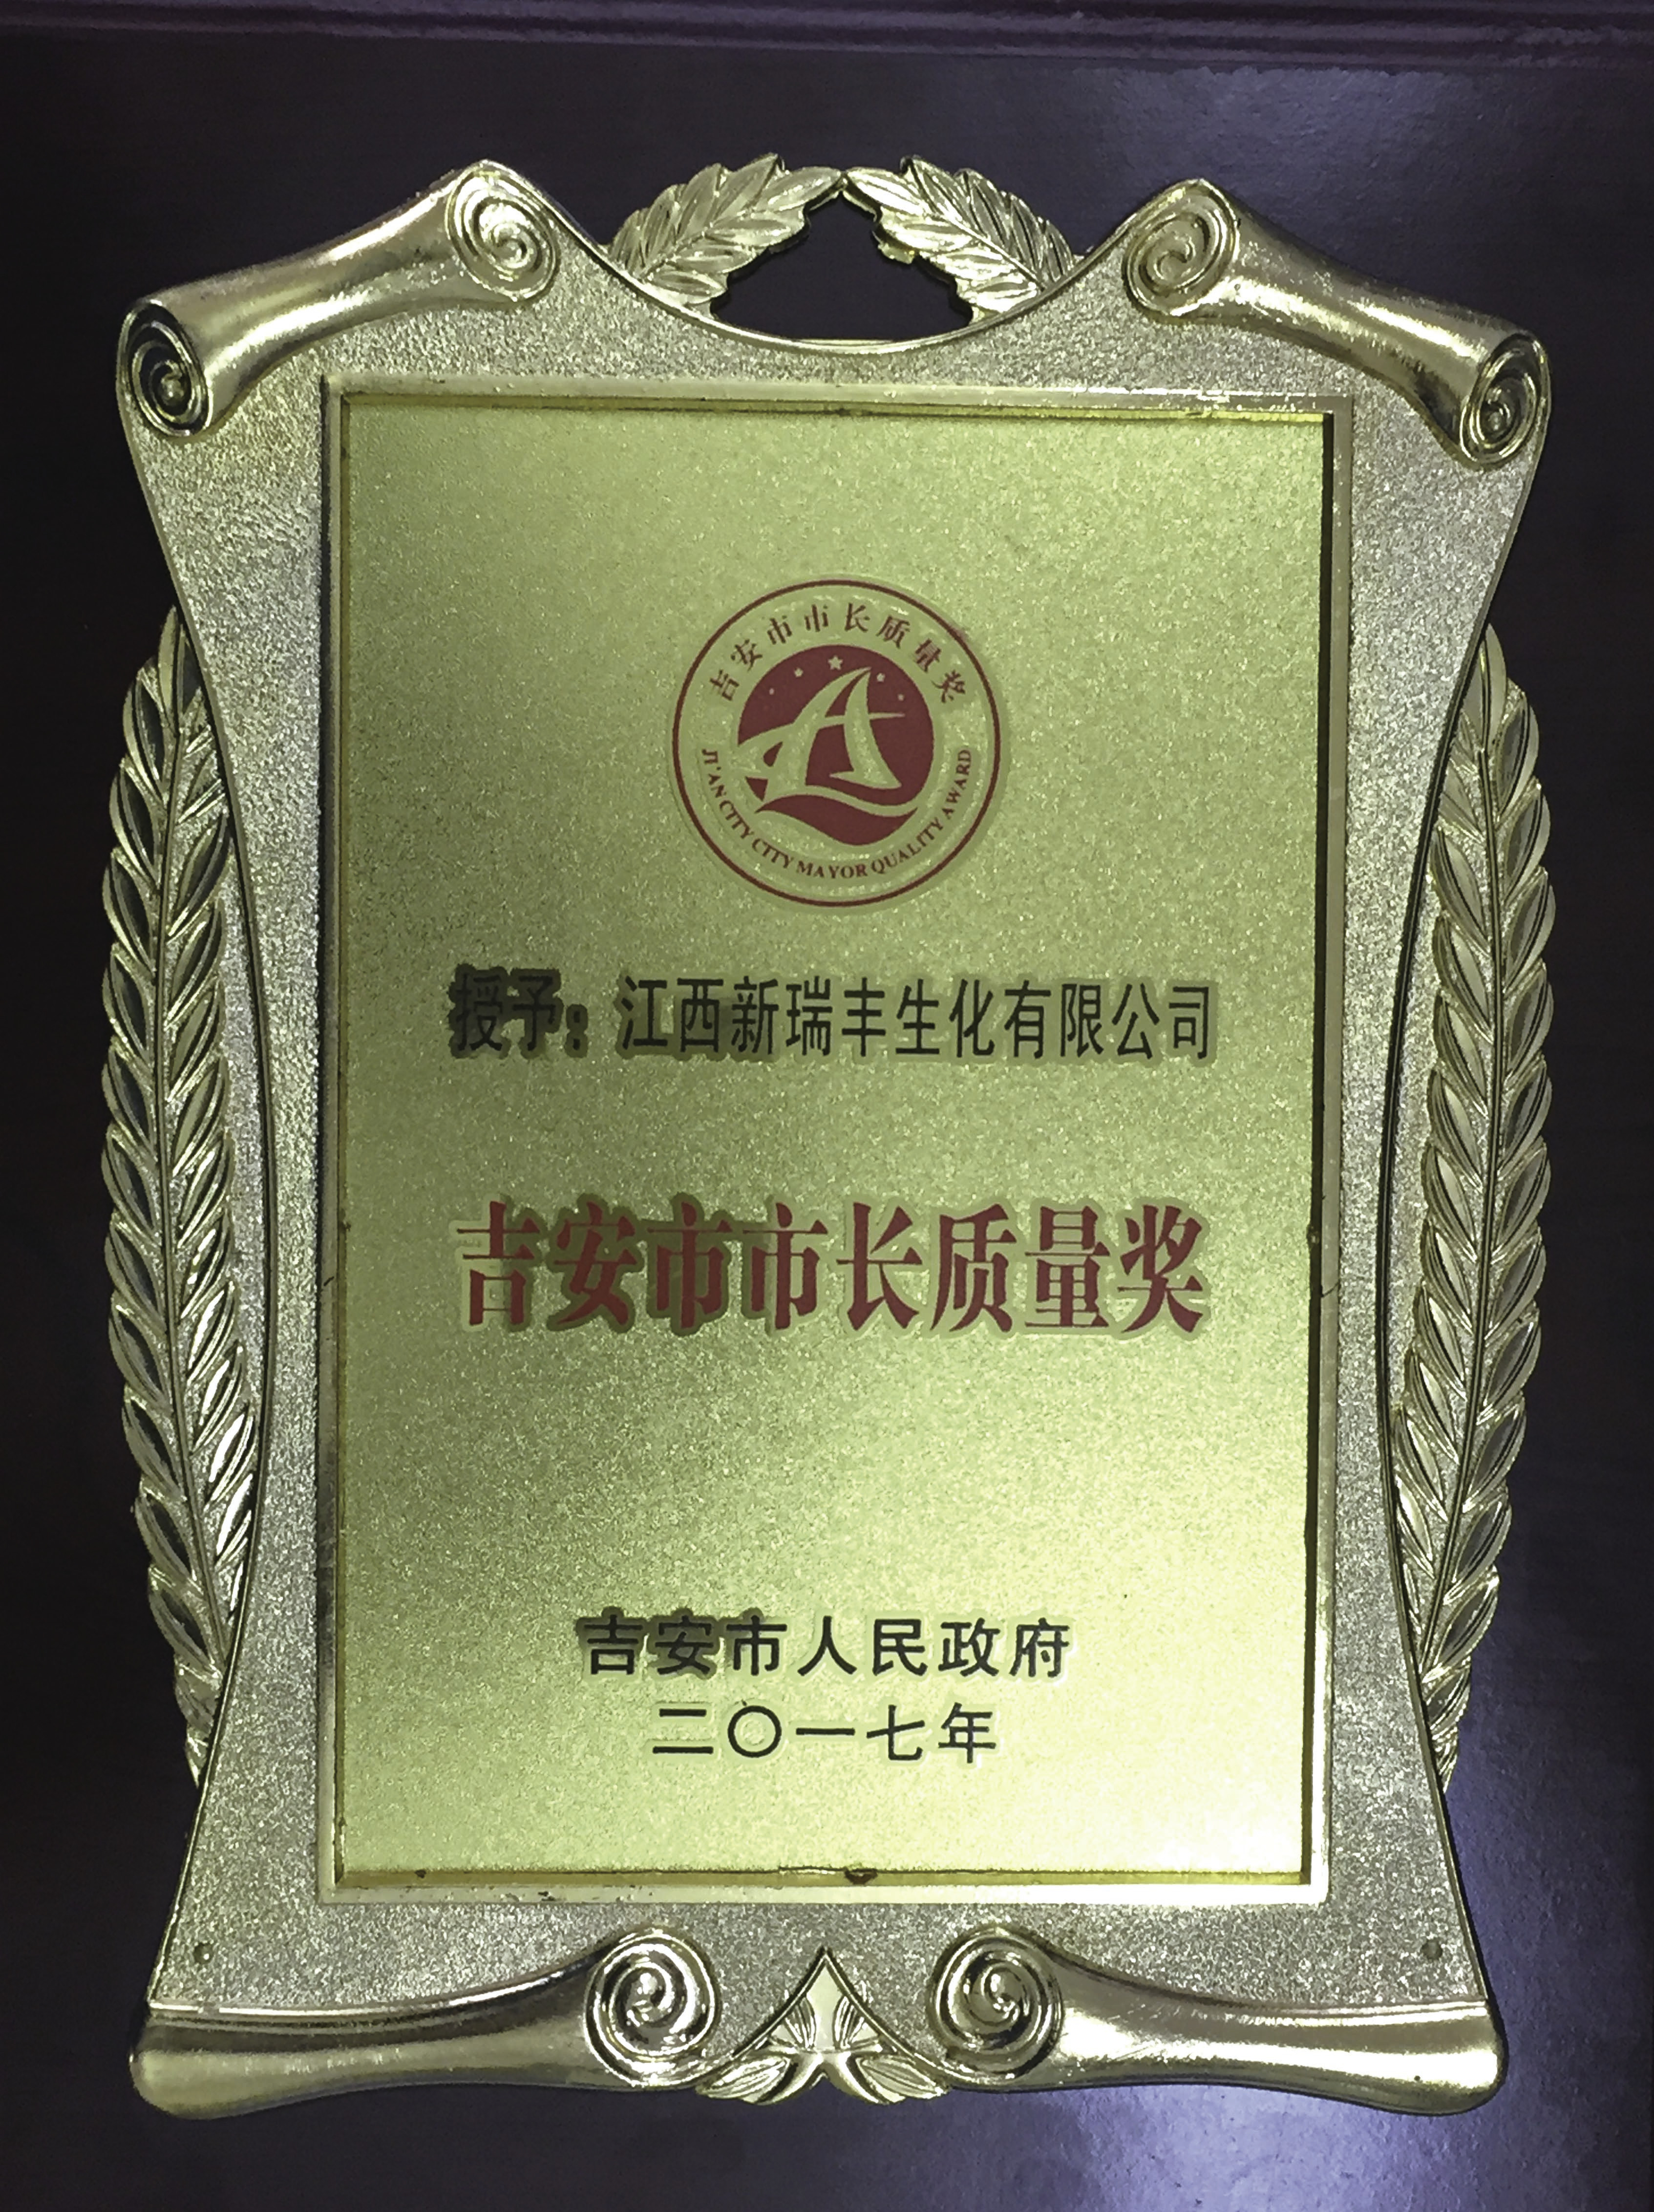 2017 Mayor Quality Award